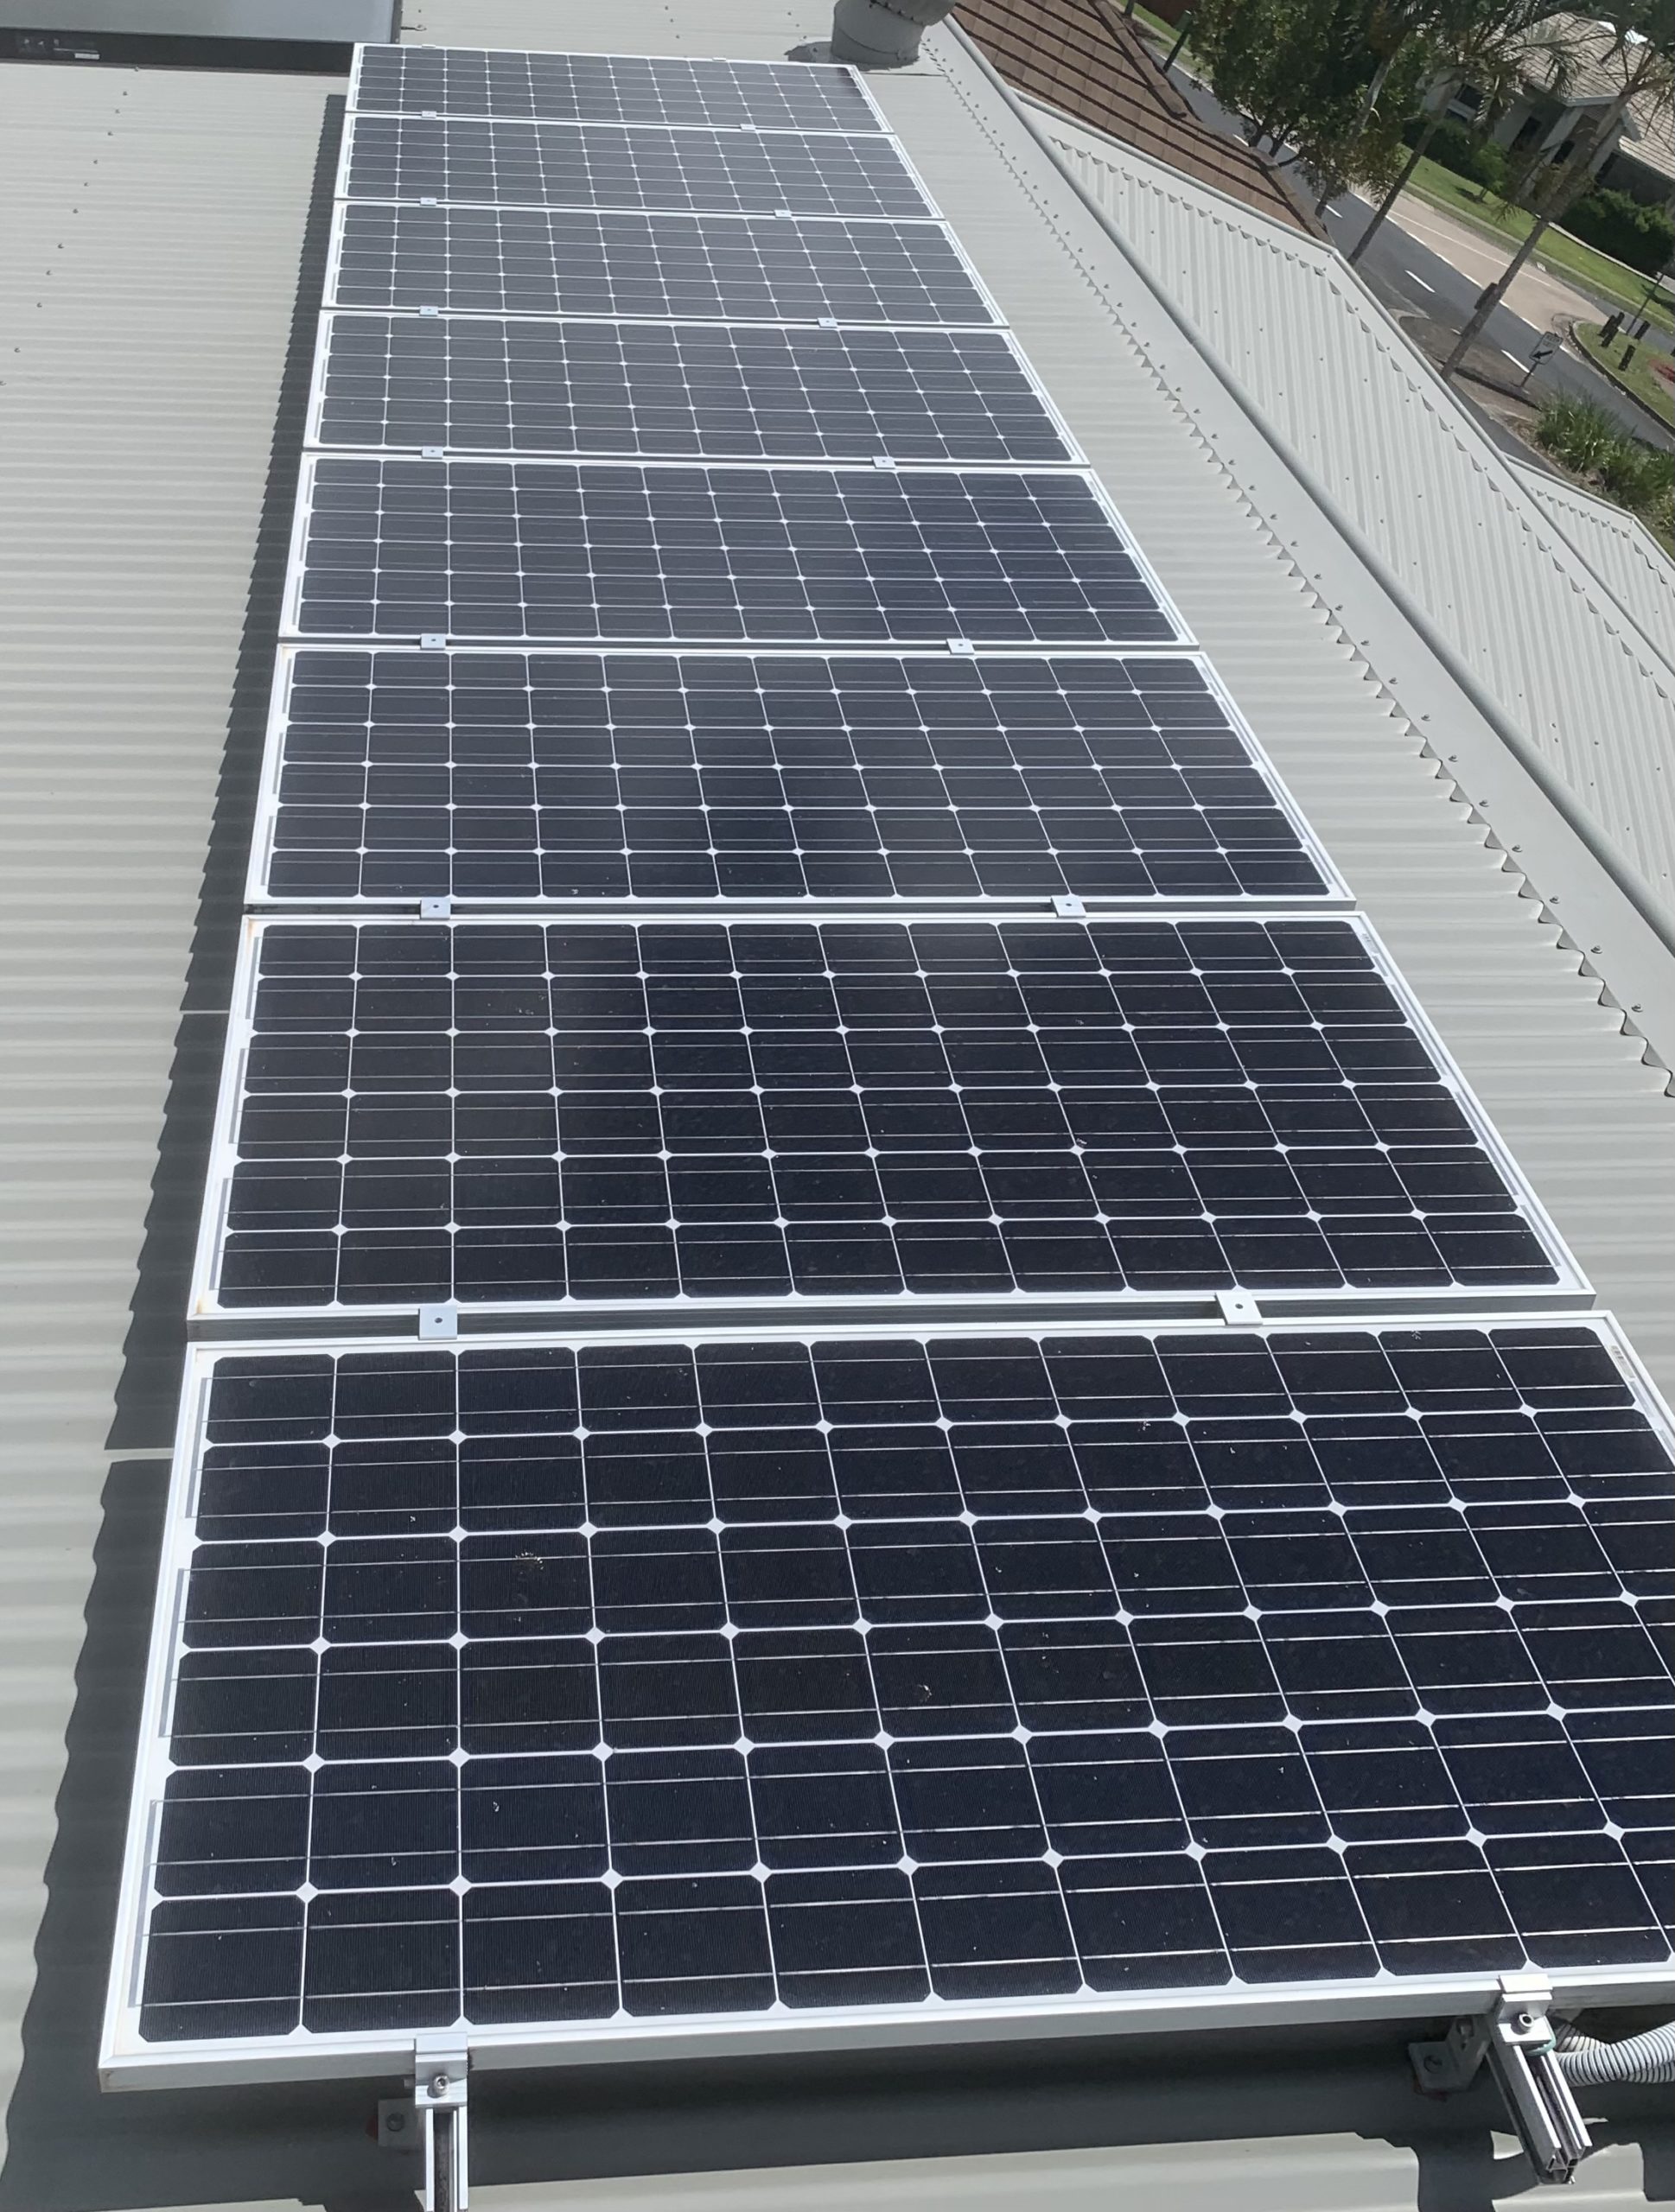 Solar Panel Cleaning Sunshine Coast